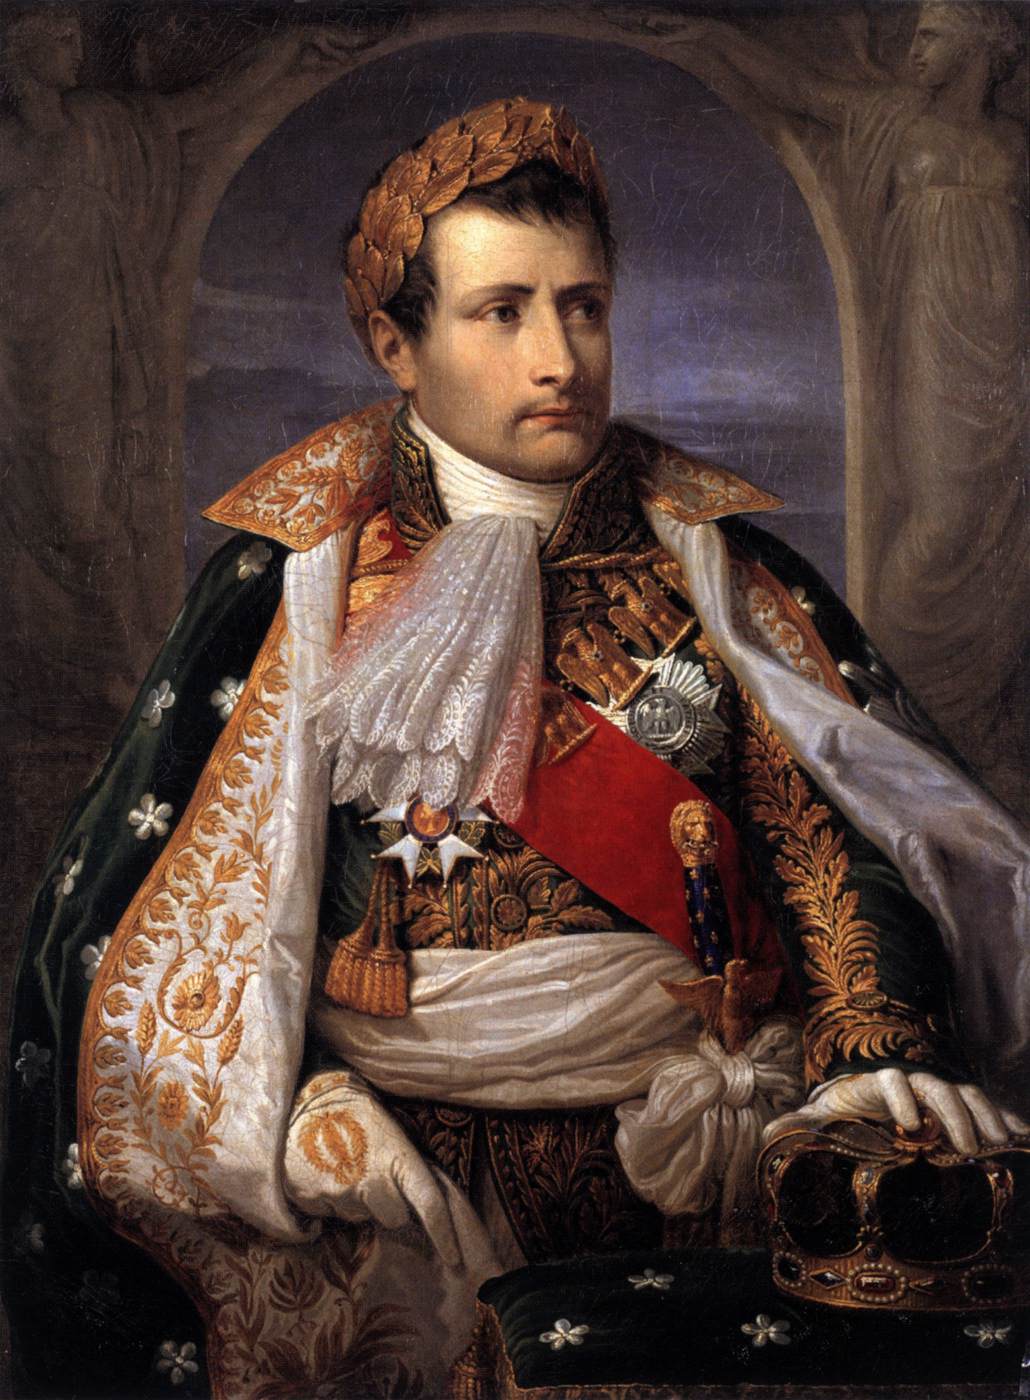 Napolyon portresi, İtalya'nın ilk kralı